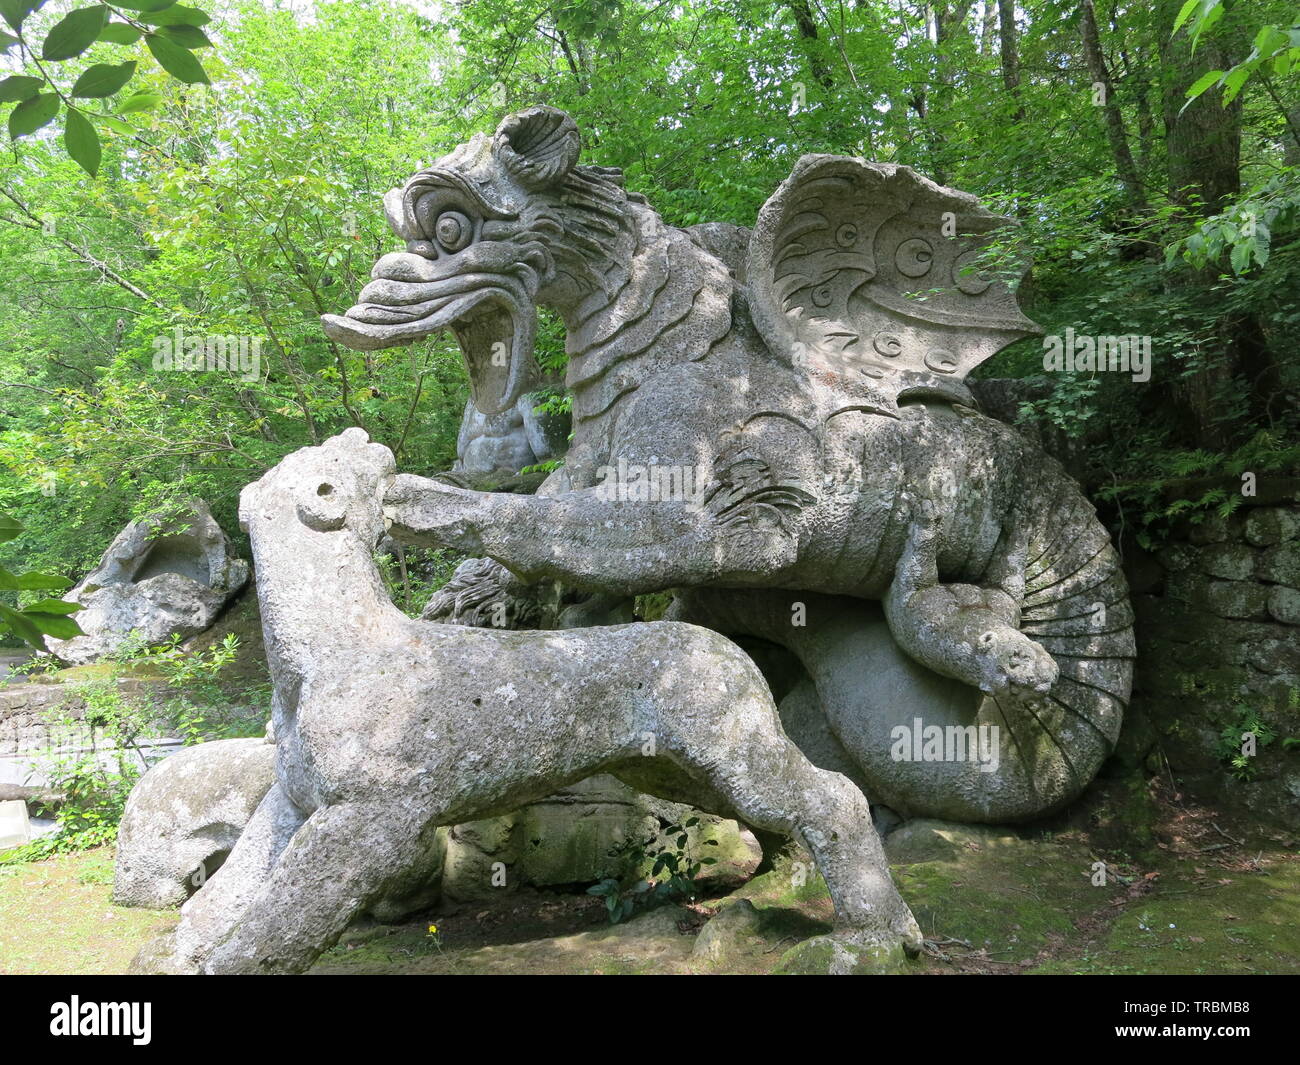 Mythologische Wesen sind einige der riesigen steinskulpturen am Exzenter Sacro Bosco Park in der Nähe von Bomarzo, Italien Stockfoto